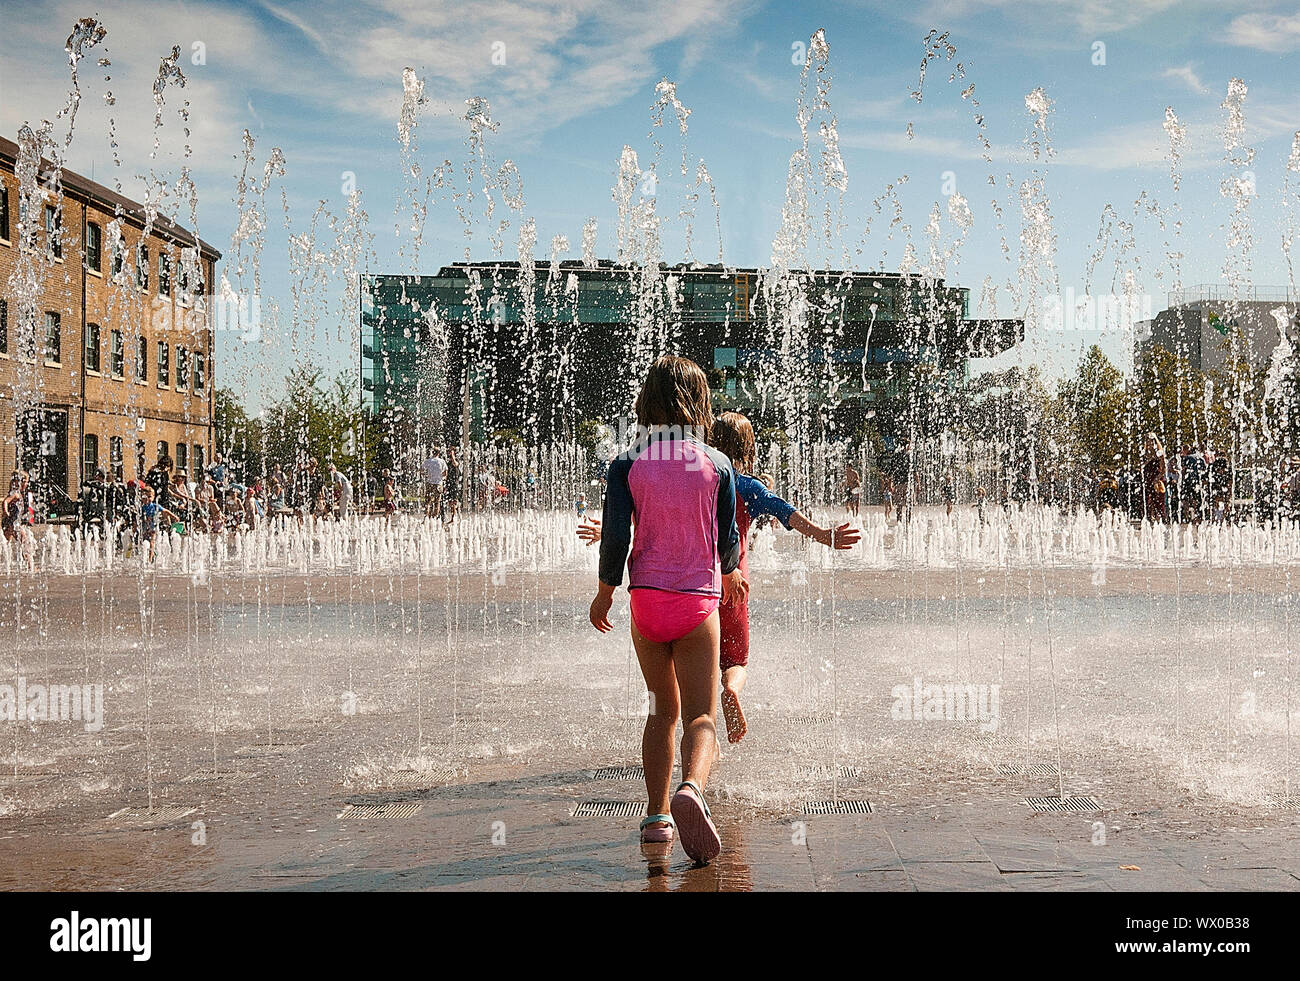 Bambini a giocare con le fontane in Granery Sq Kings Cross London REGNO UNITO Foto Stock